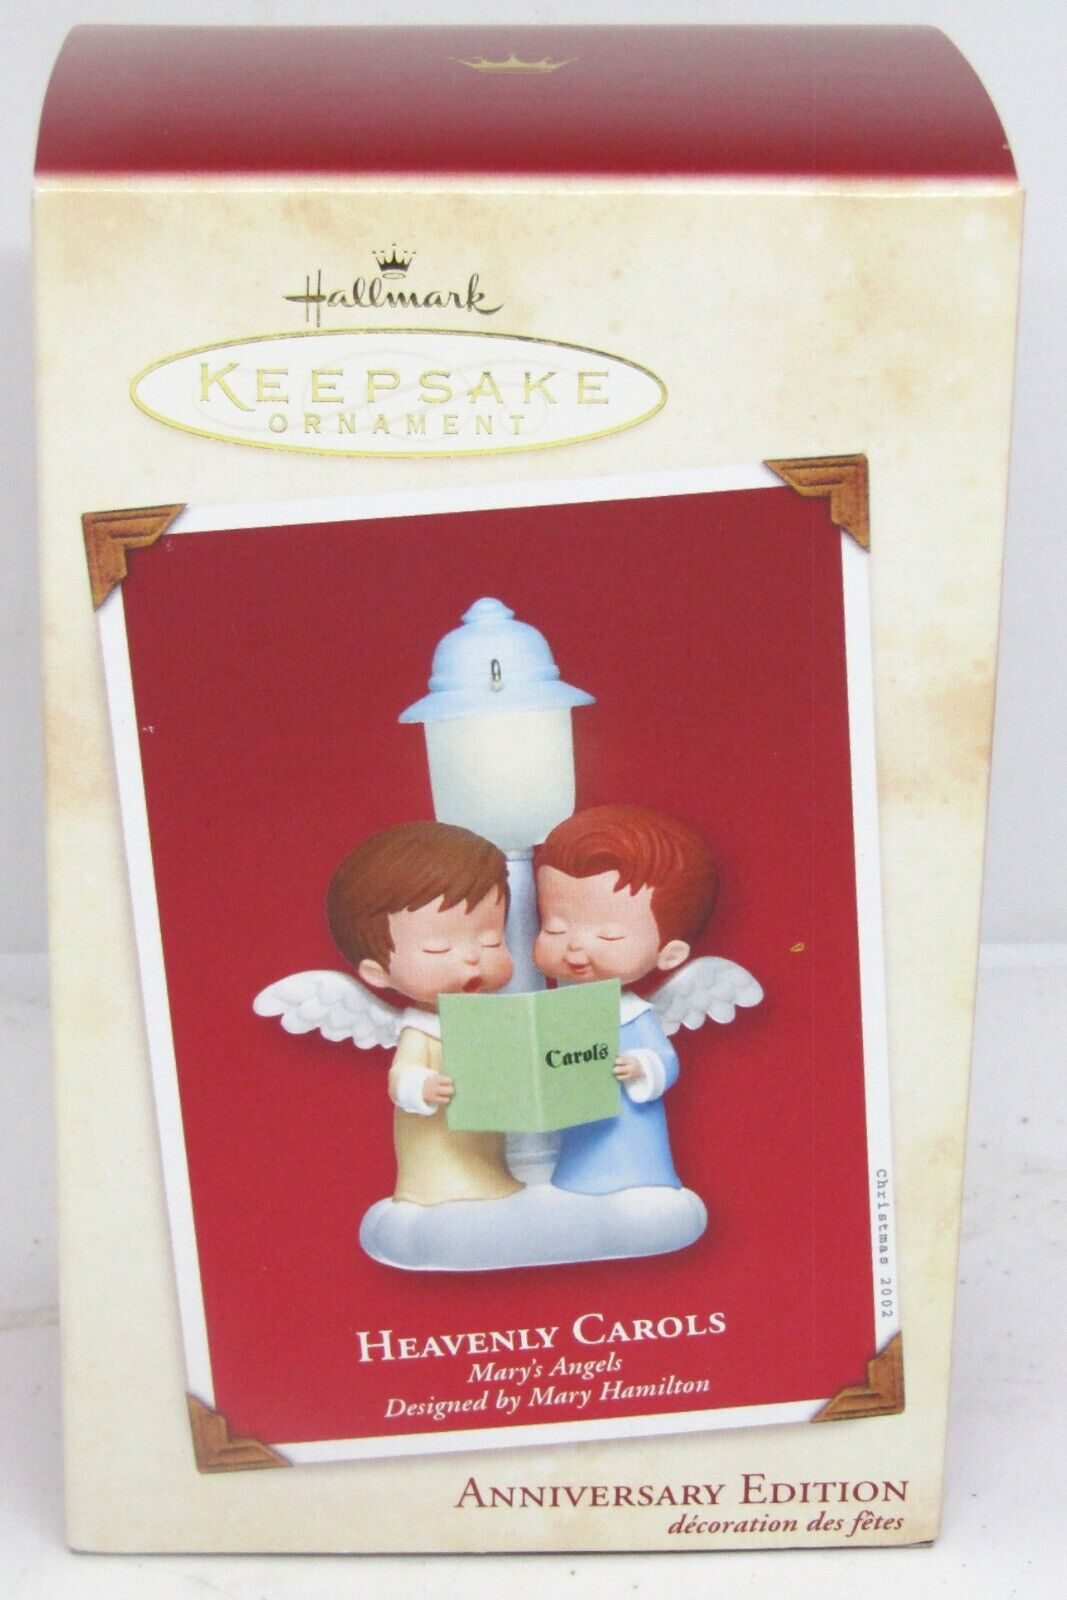 Vintage 2002 Hallmark Keepsake Anniversary Edition, Heavenly Carols, Ornament.